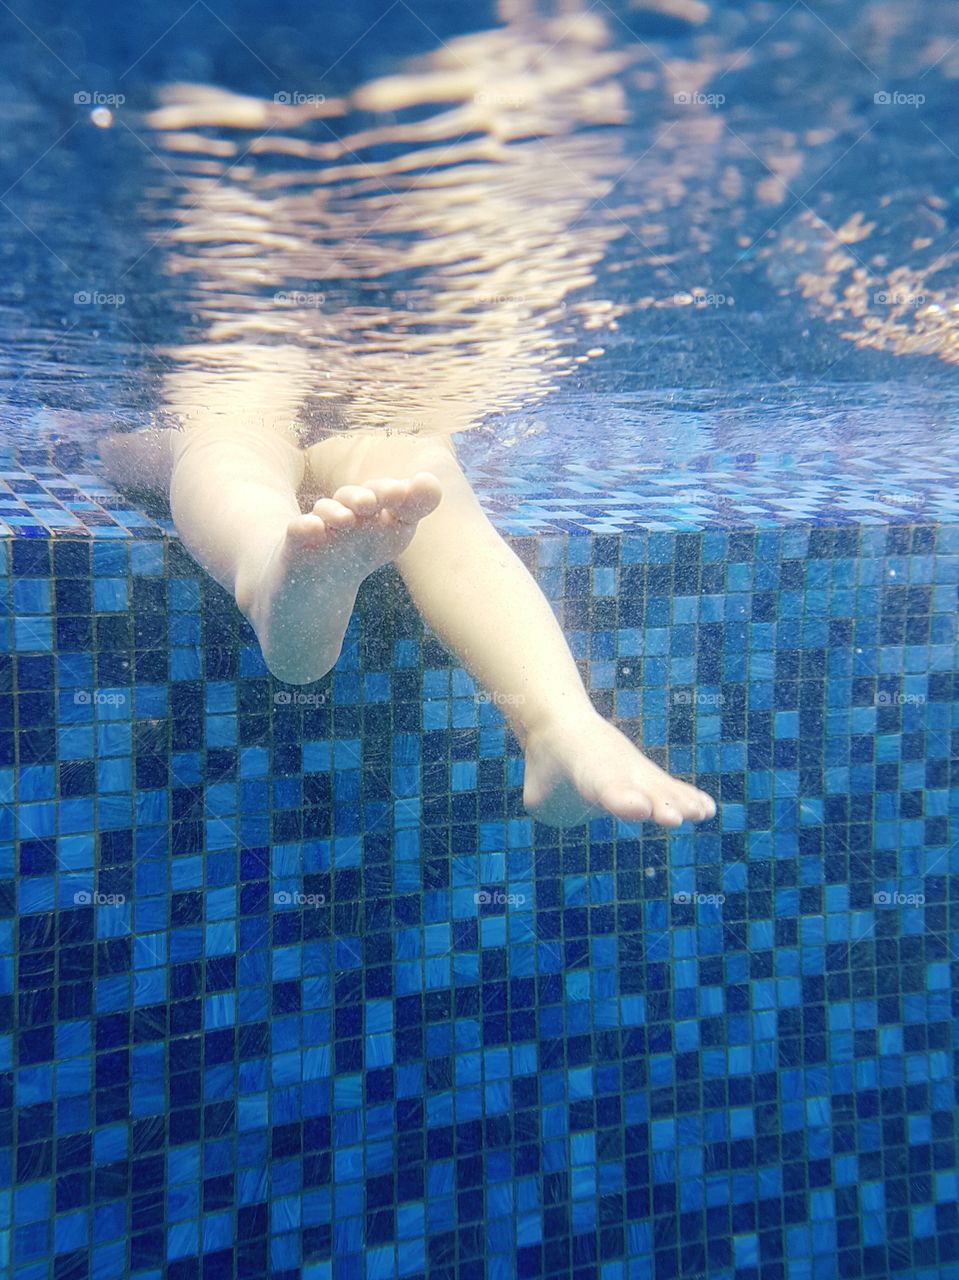 Child enjoying swimming pool